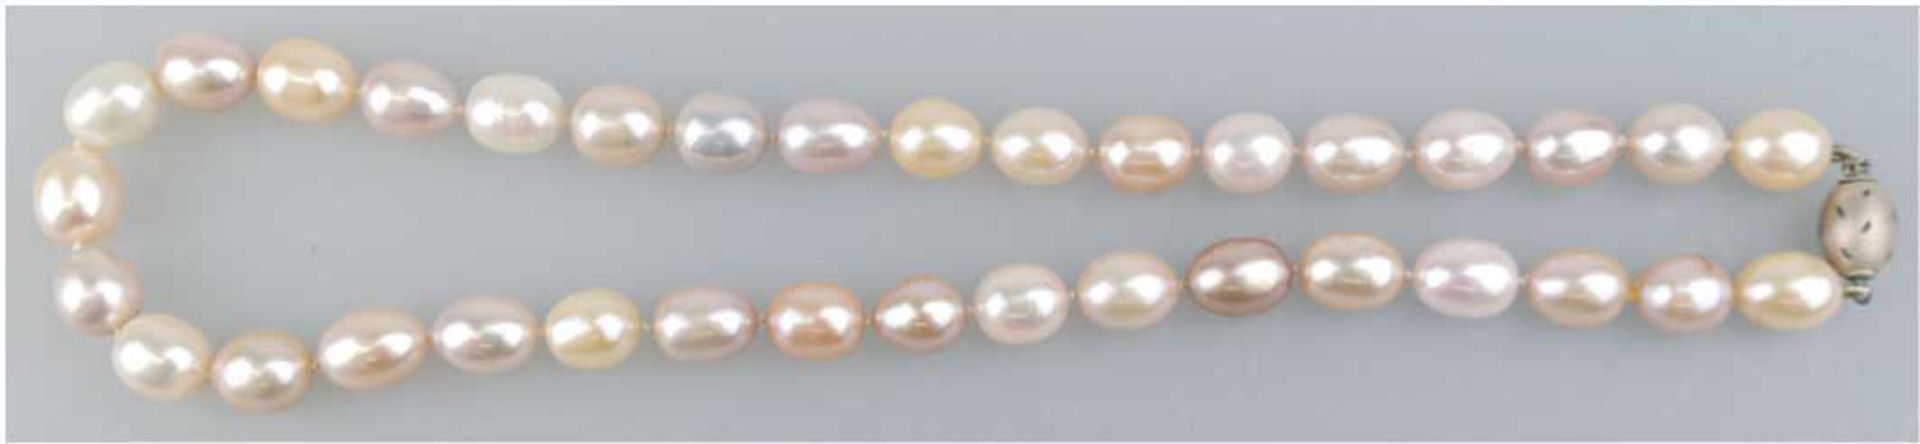 SW-Perlenkette, erstklassige Lüster und Qualität, multicolor, Maße der ovalen Perlen ca.11 x 9,5 mm,